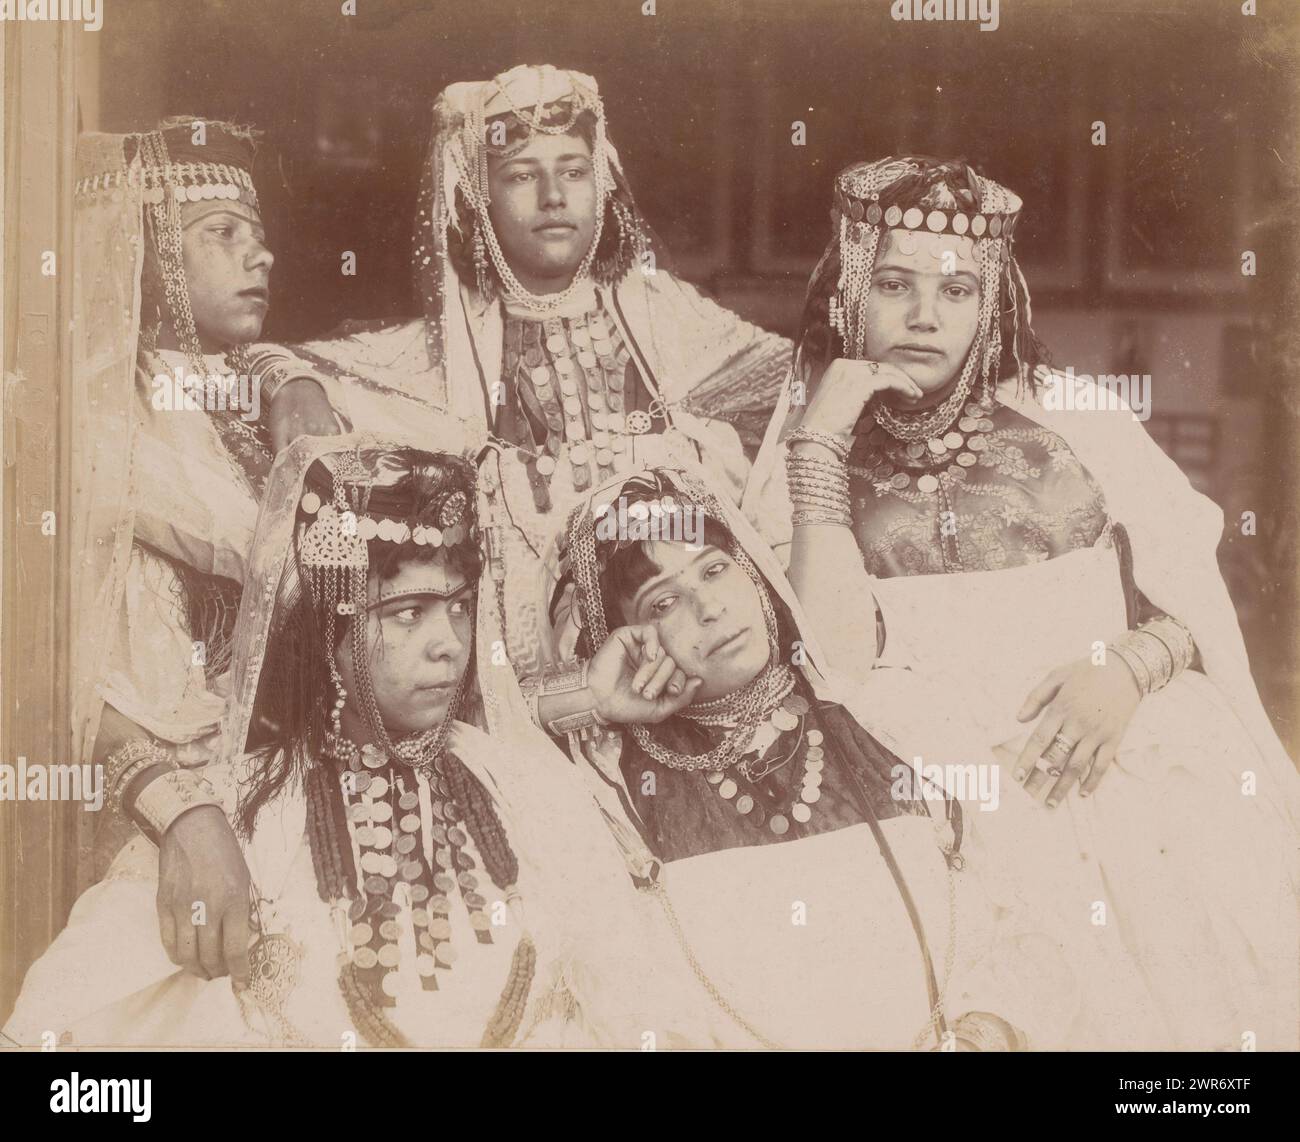 Ritratto di gruppo di cinque donne naie sconosciute in Algeria, Algeri, groupe de filles d'Ouled Nail à Biskra (titolo sull'oggetto), anonimo, Algerije, 1890 - 1930, baryta paper, altezza 247 mm x larghezza 317 mm, fotografia Foto Stock